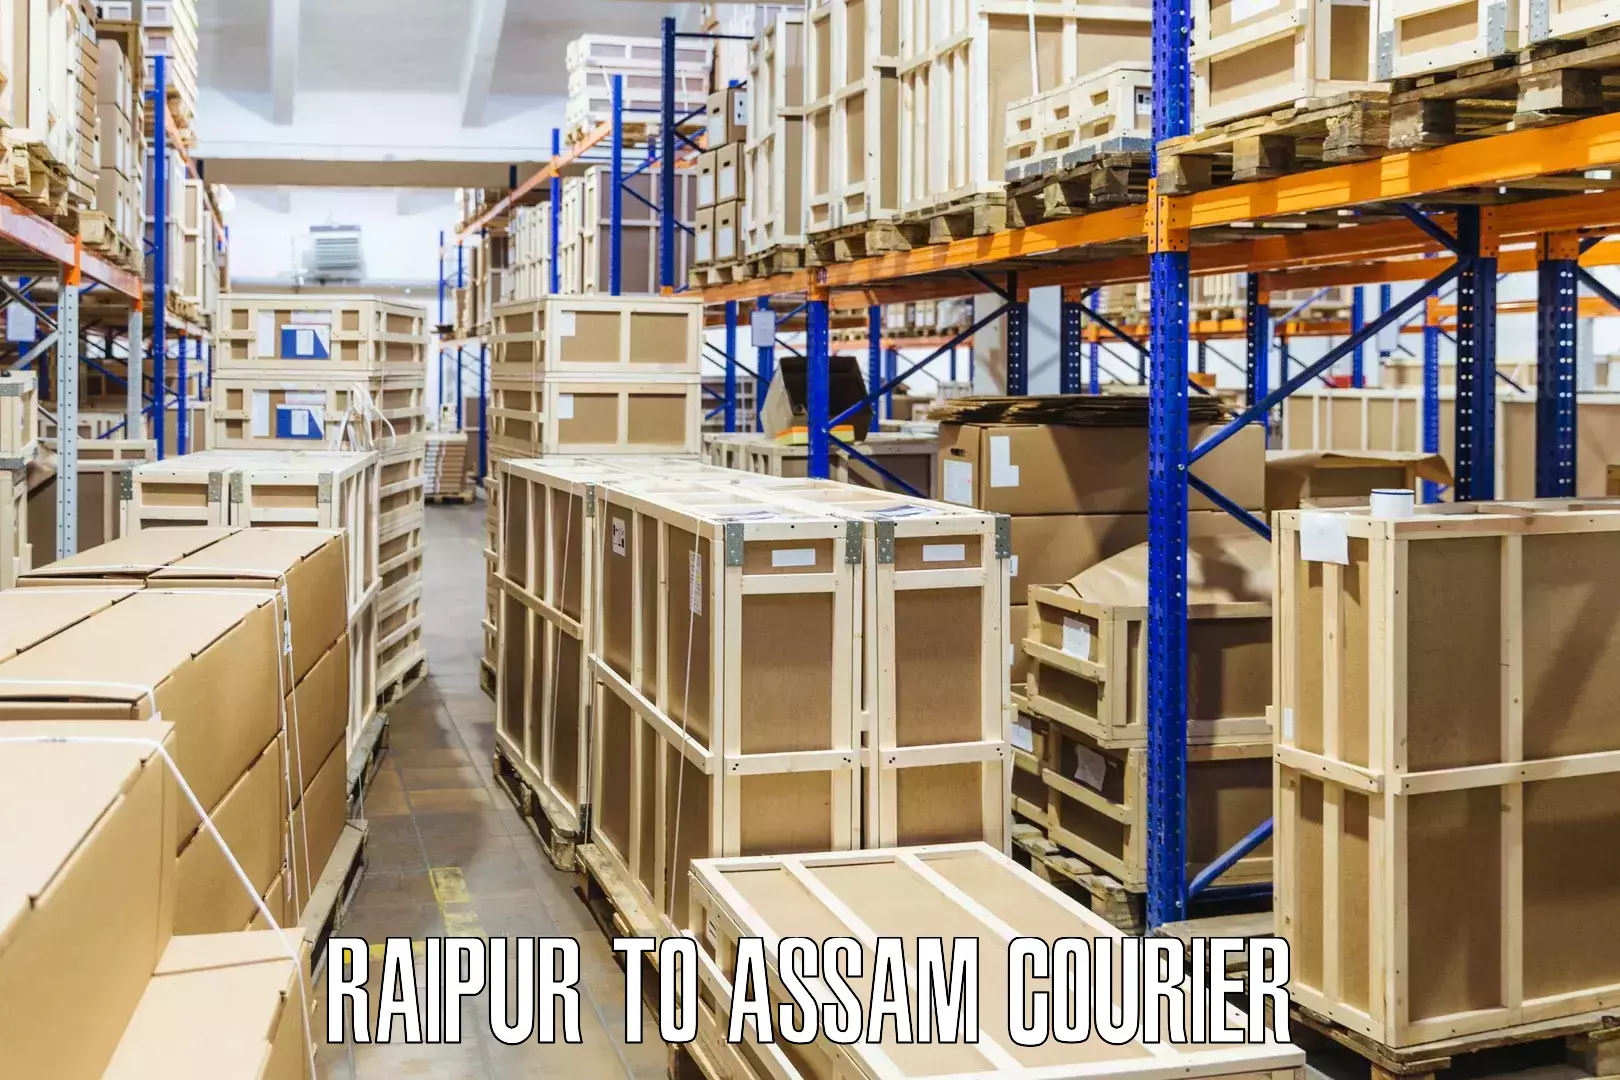 Digital courier platforms Raipur to Balipara